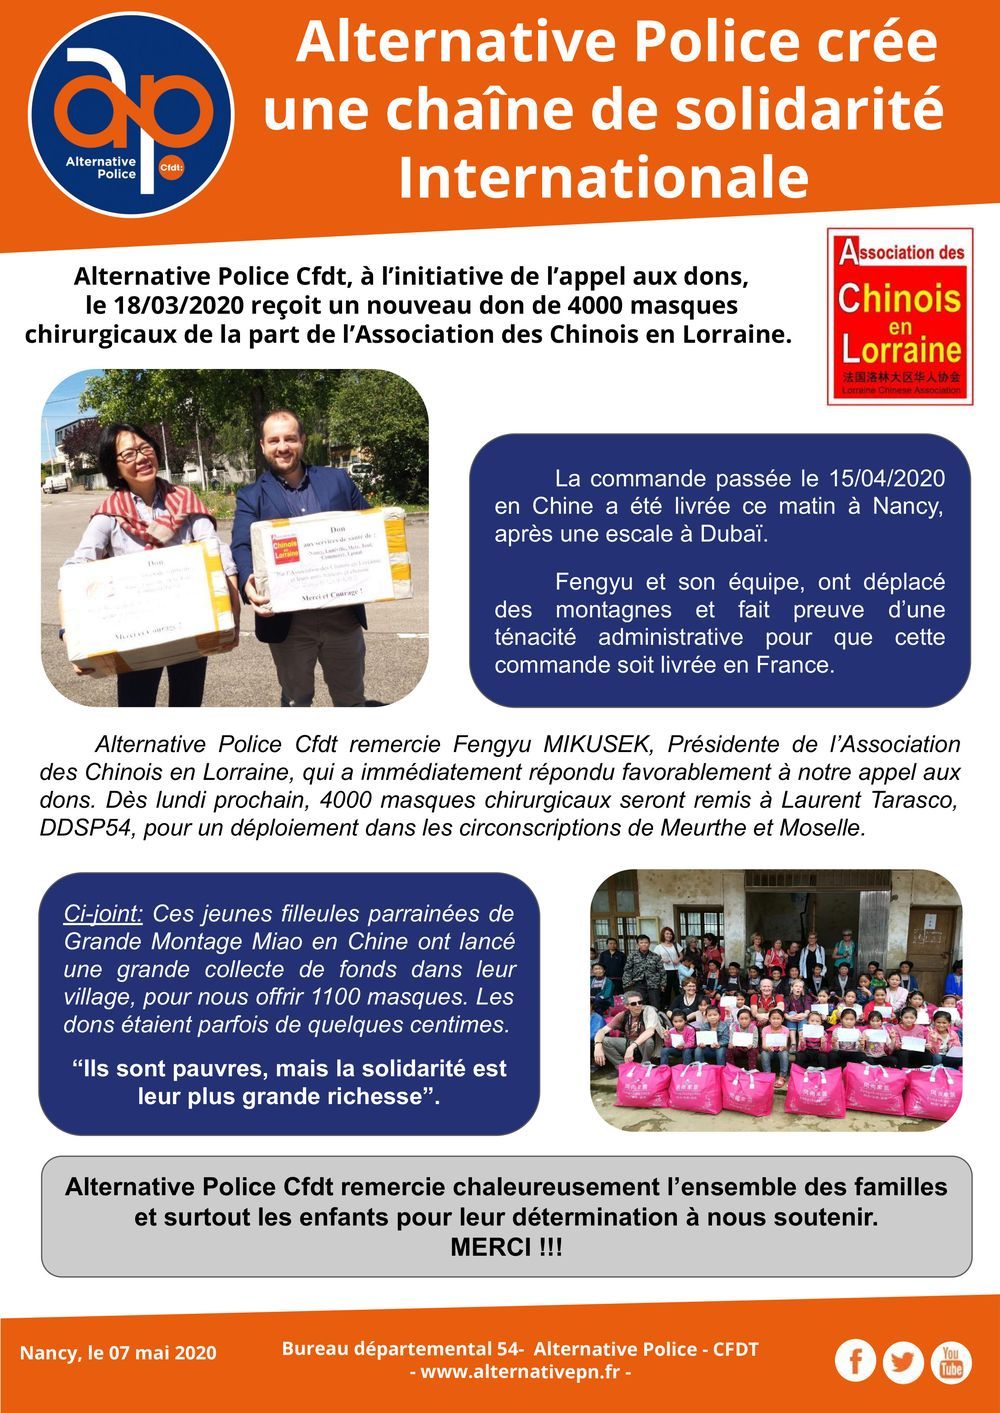 Zone Grand Est : ALTERNATIVE Police CFDT crée une chaîne de solidarité internationale !